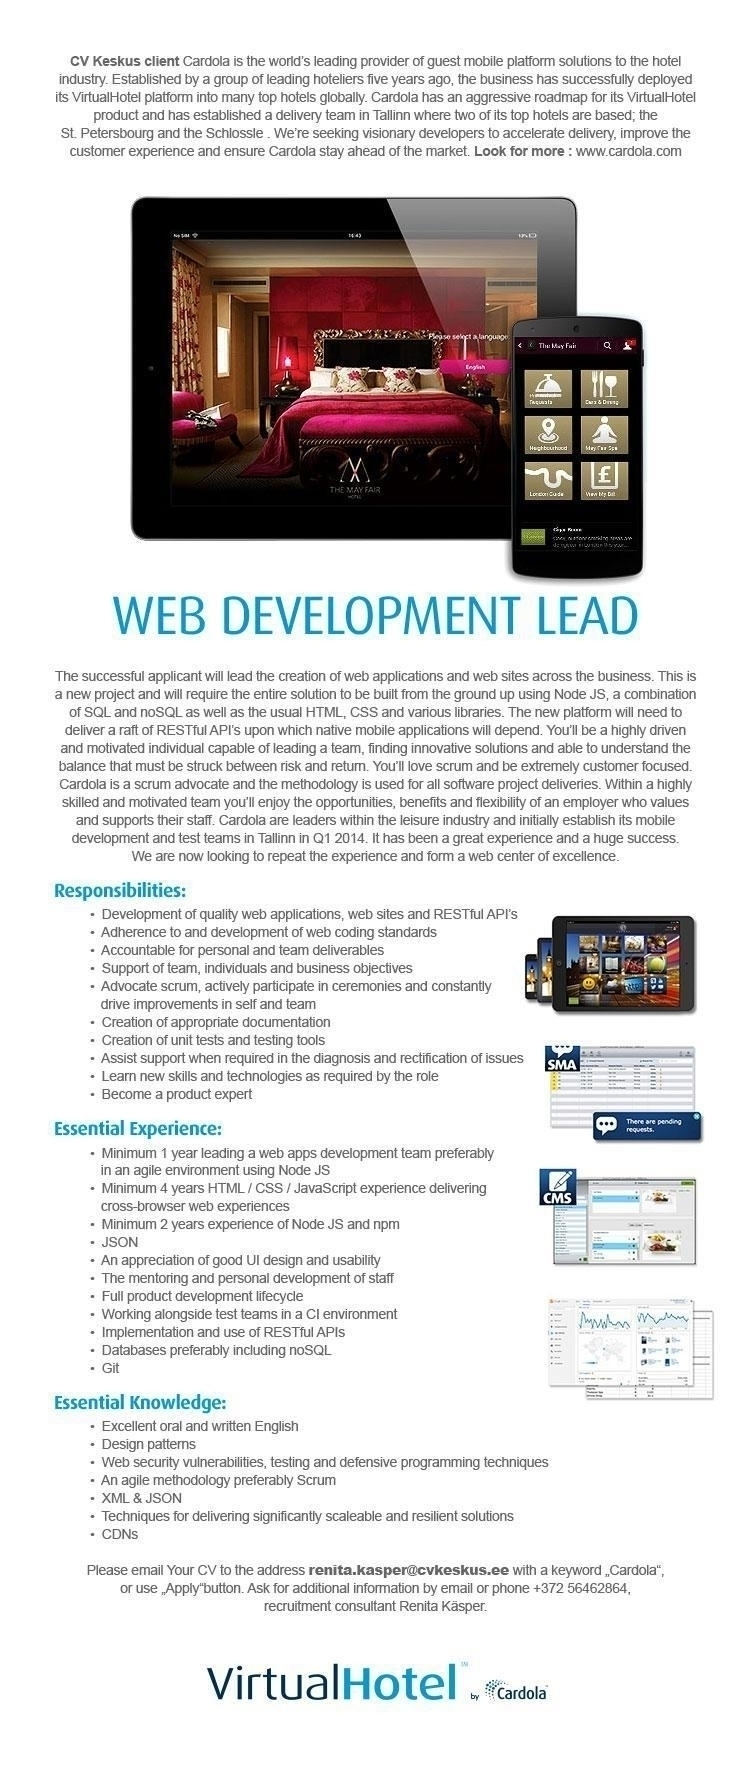 CV KESKUS OÜ Cardola is looking for Web Development Lead